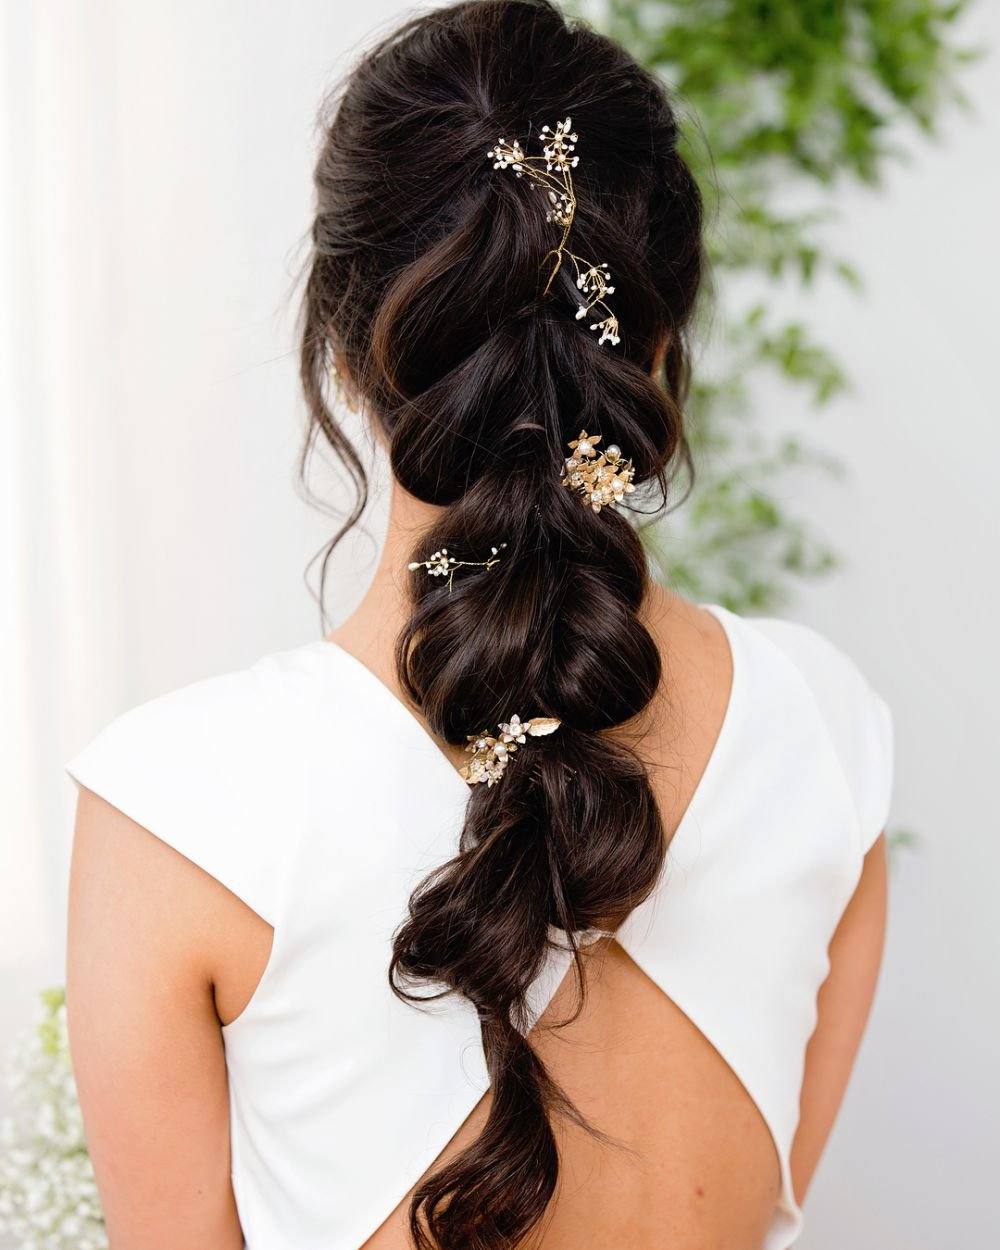 Все о свадебных прическах на длинные волосы — какую выбрать?